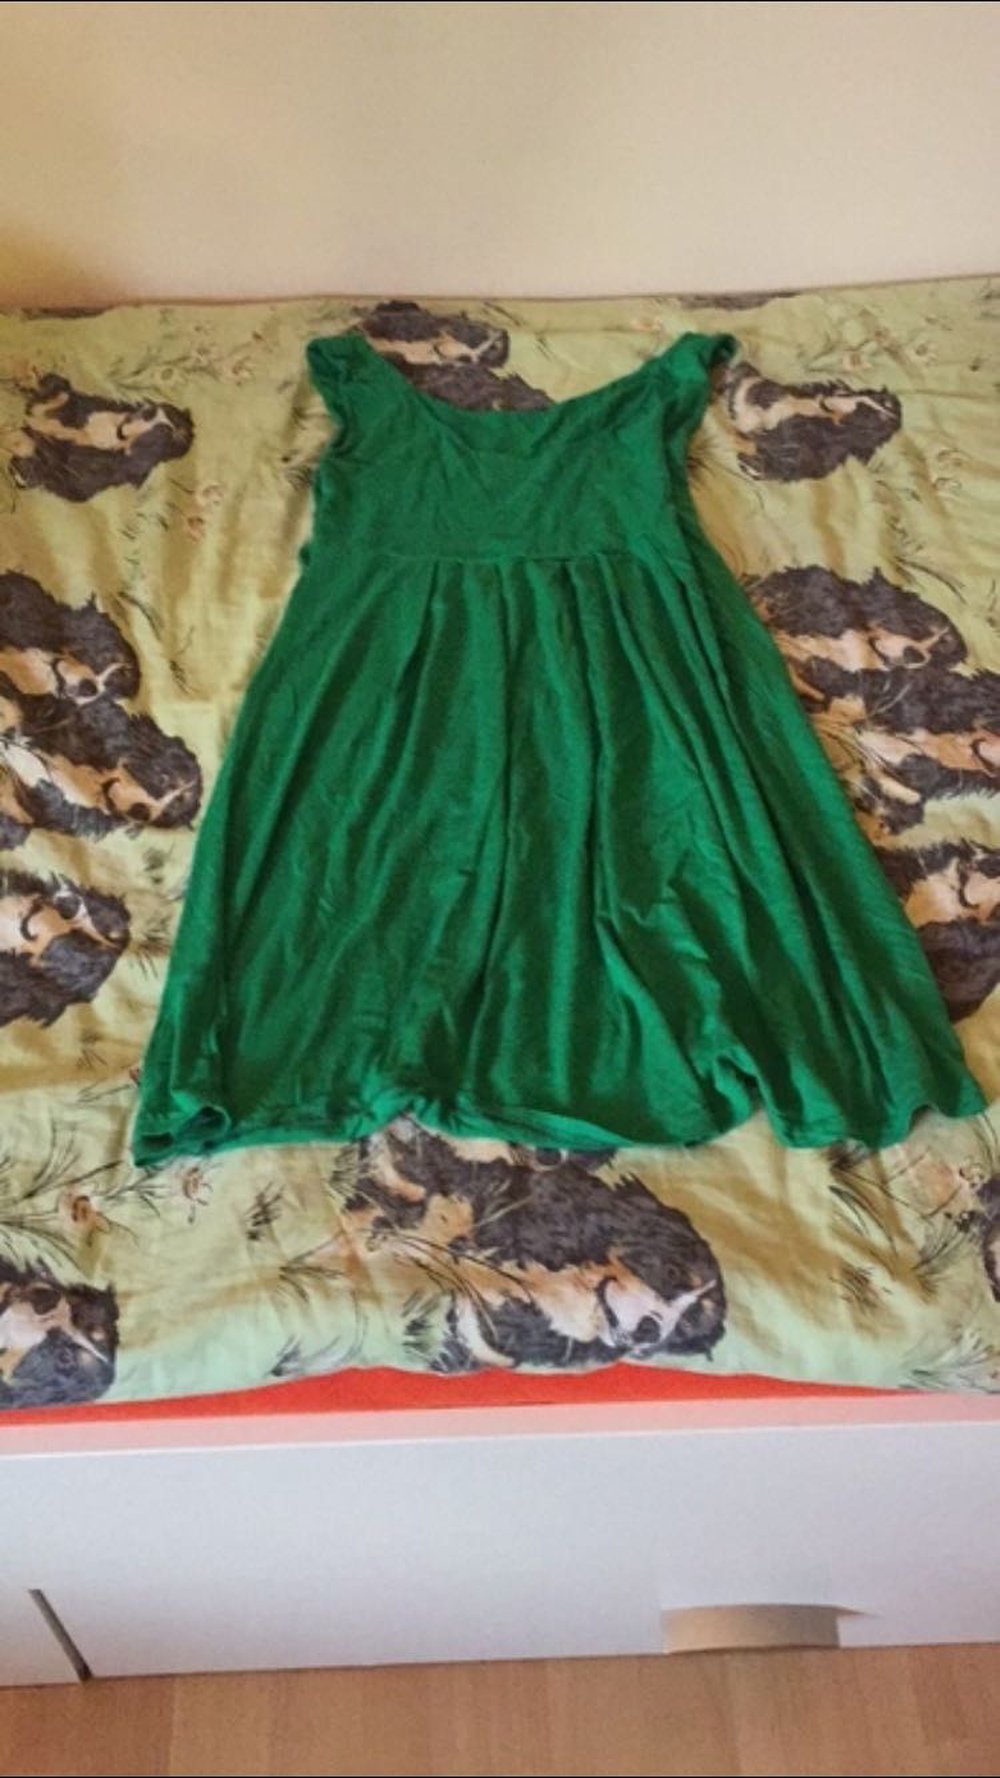 Schönes grünes Kleid.